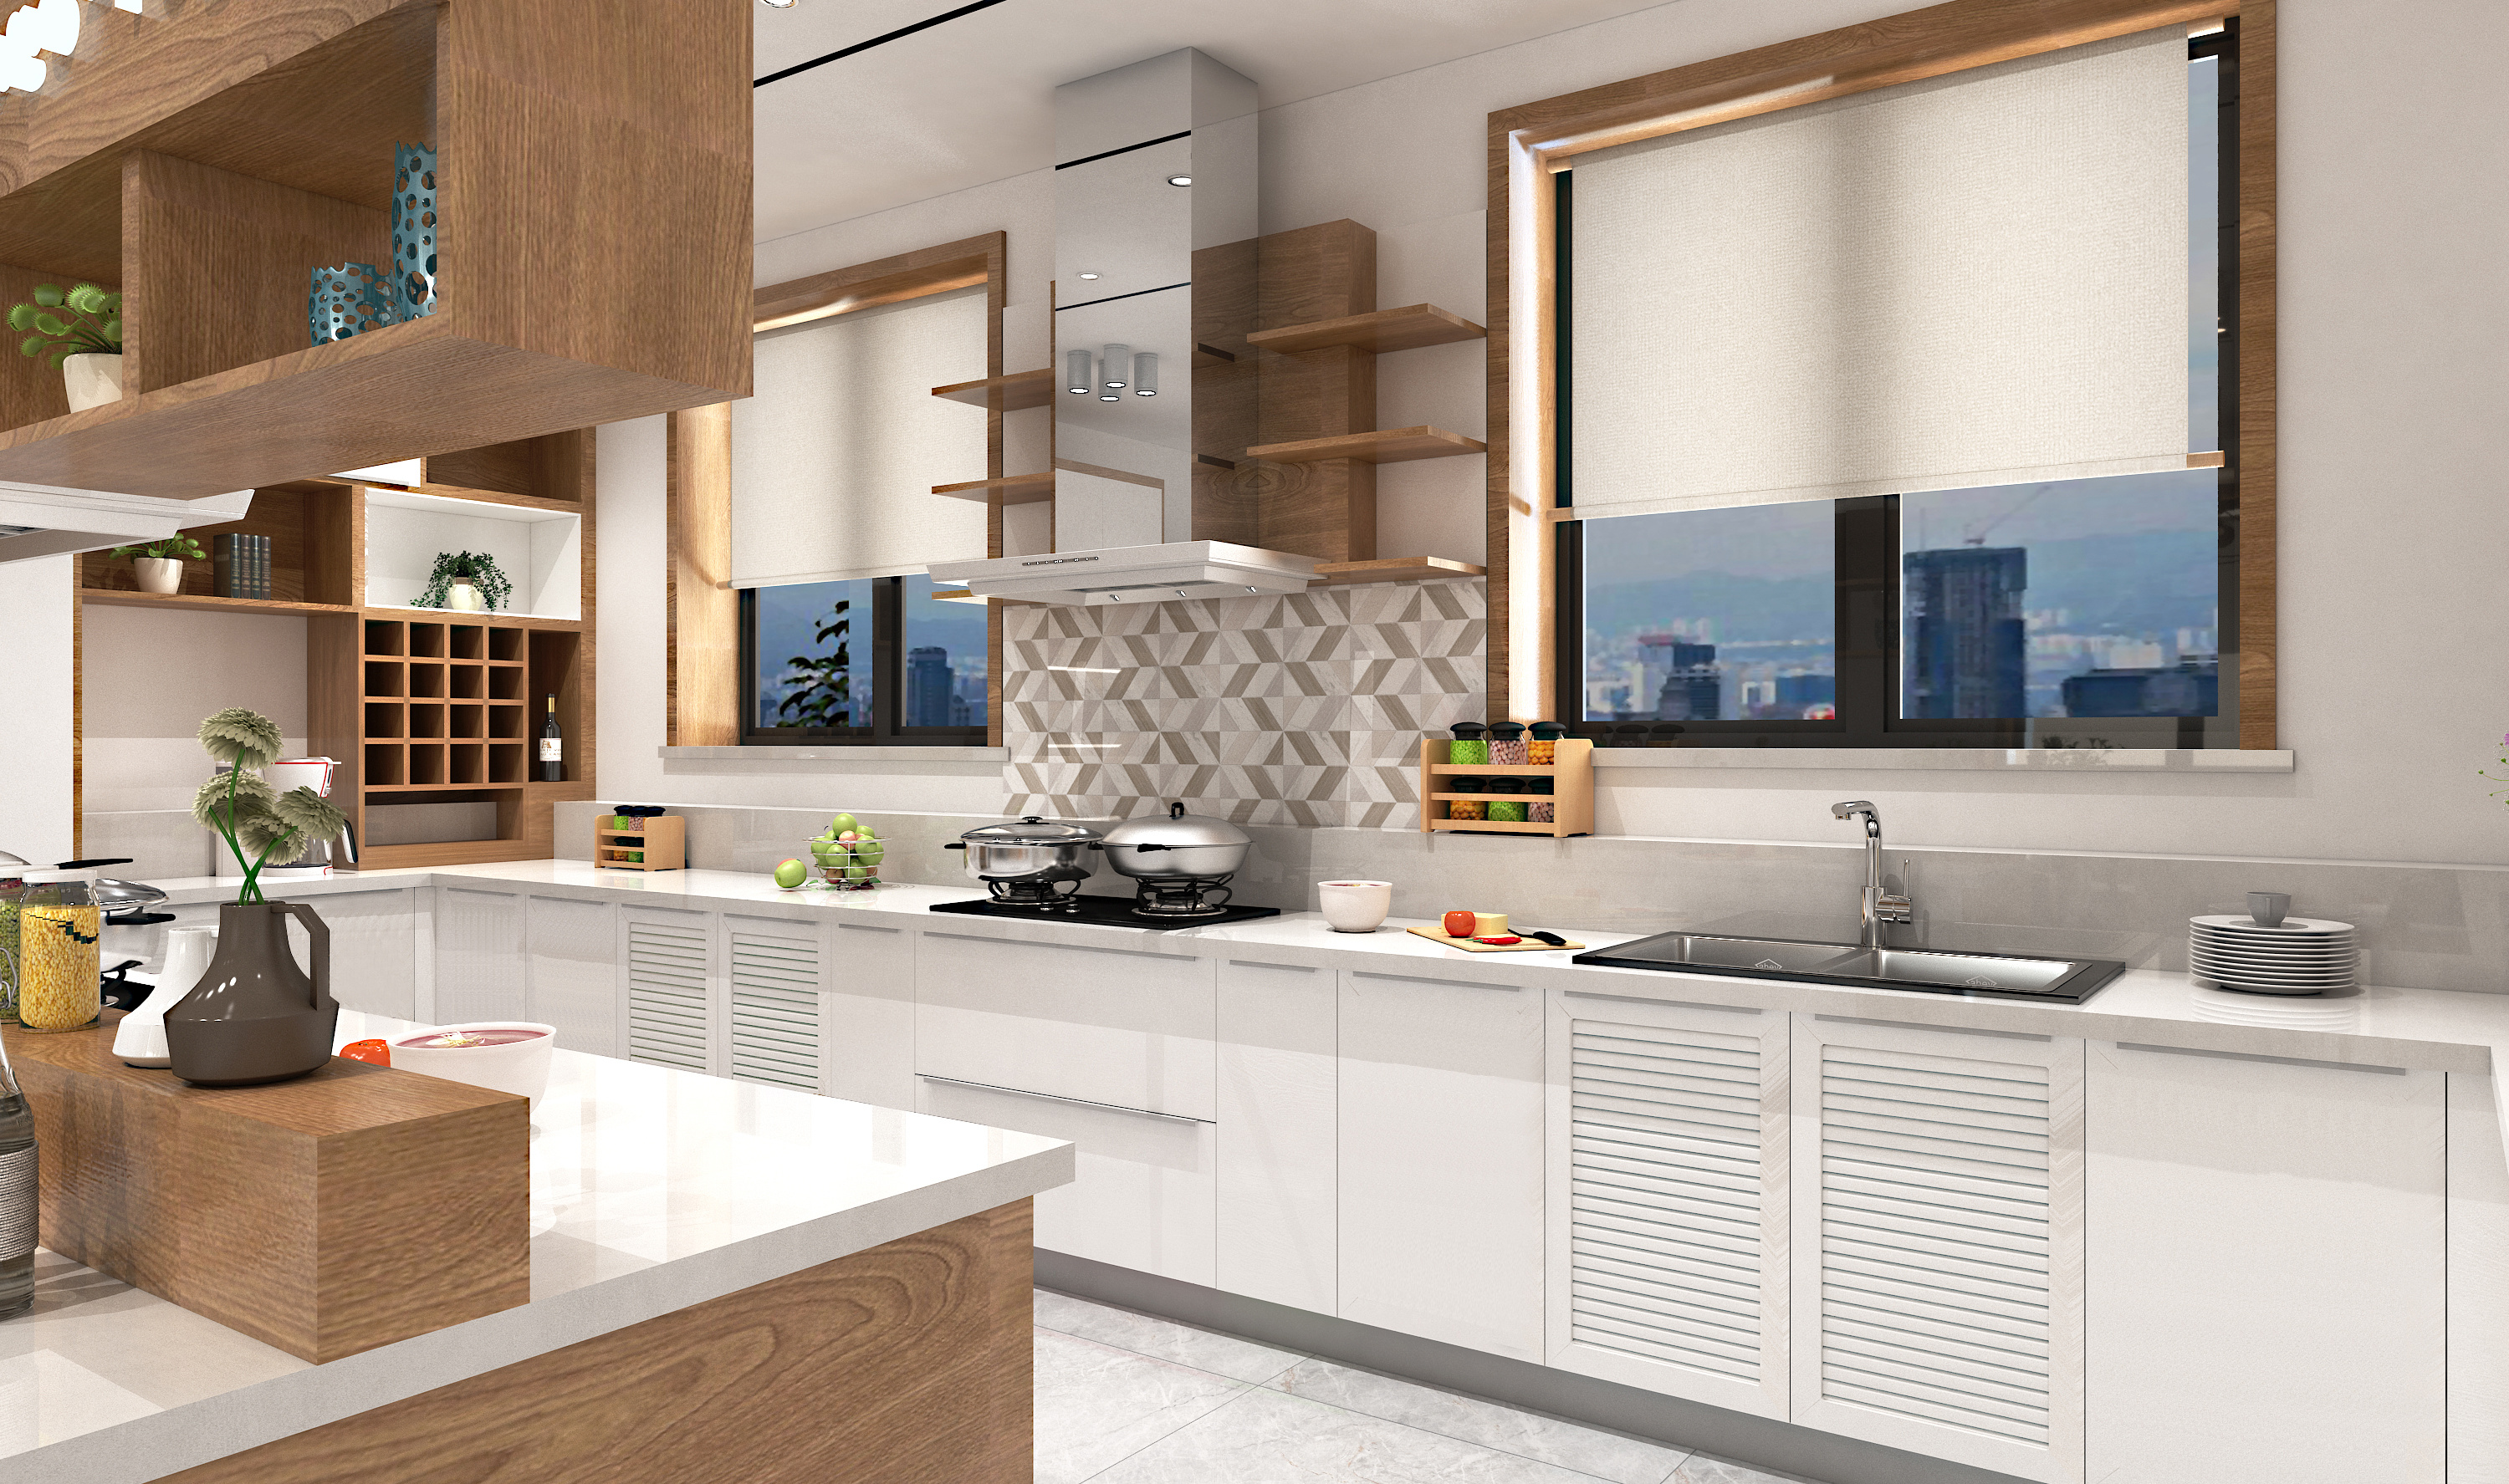 现代厨房效果图 - 效果图交流区-建E室内设计网